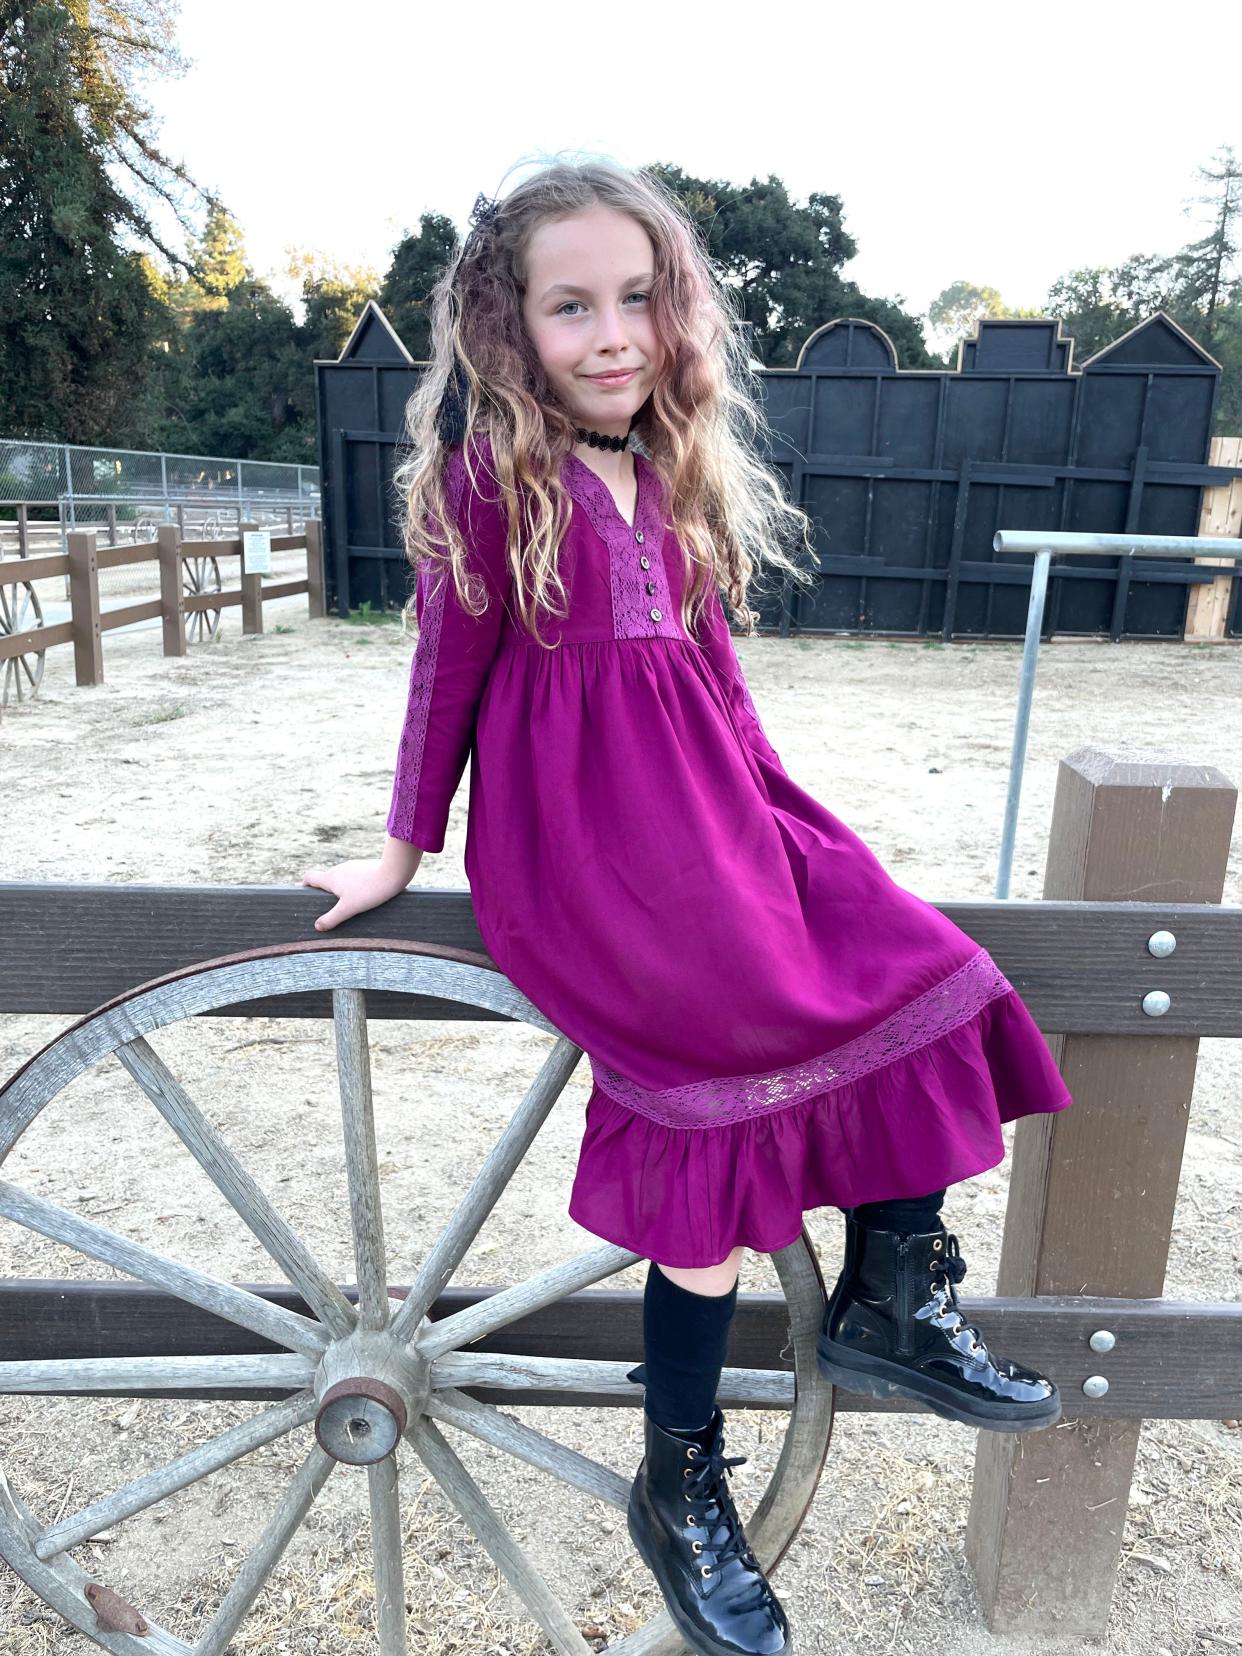 Melissa Gilbert's granddaughter, Lulabelle, models the Quarter-pint Lulabelle dress from the Modern Prairie line.